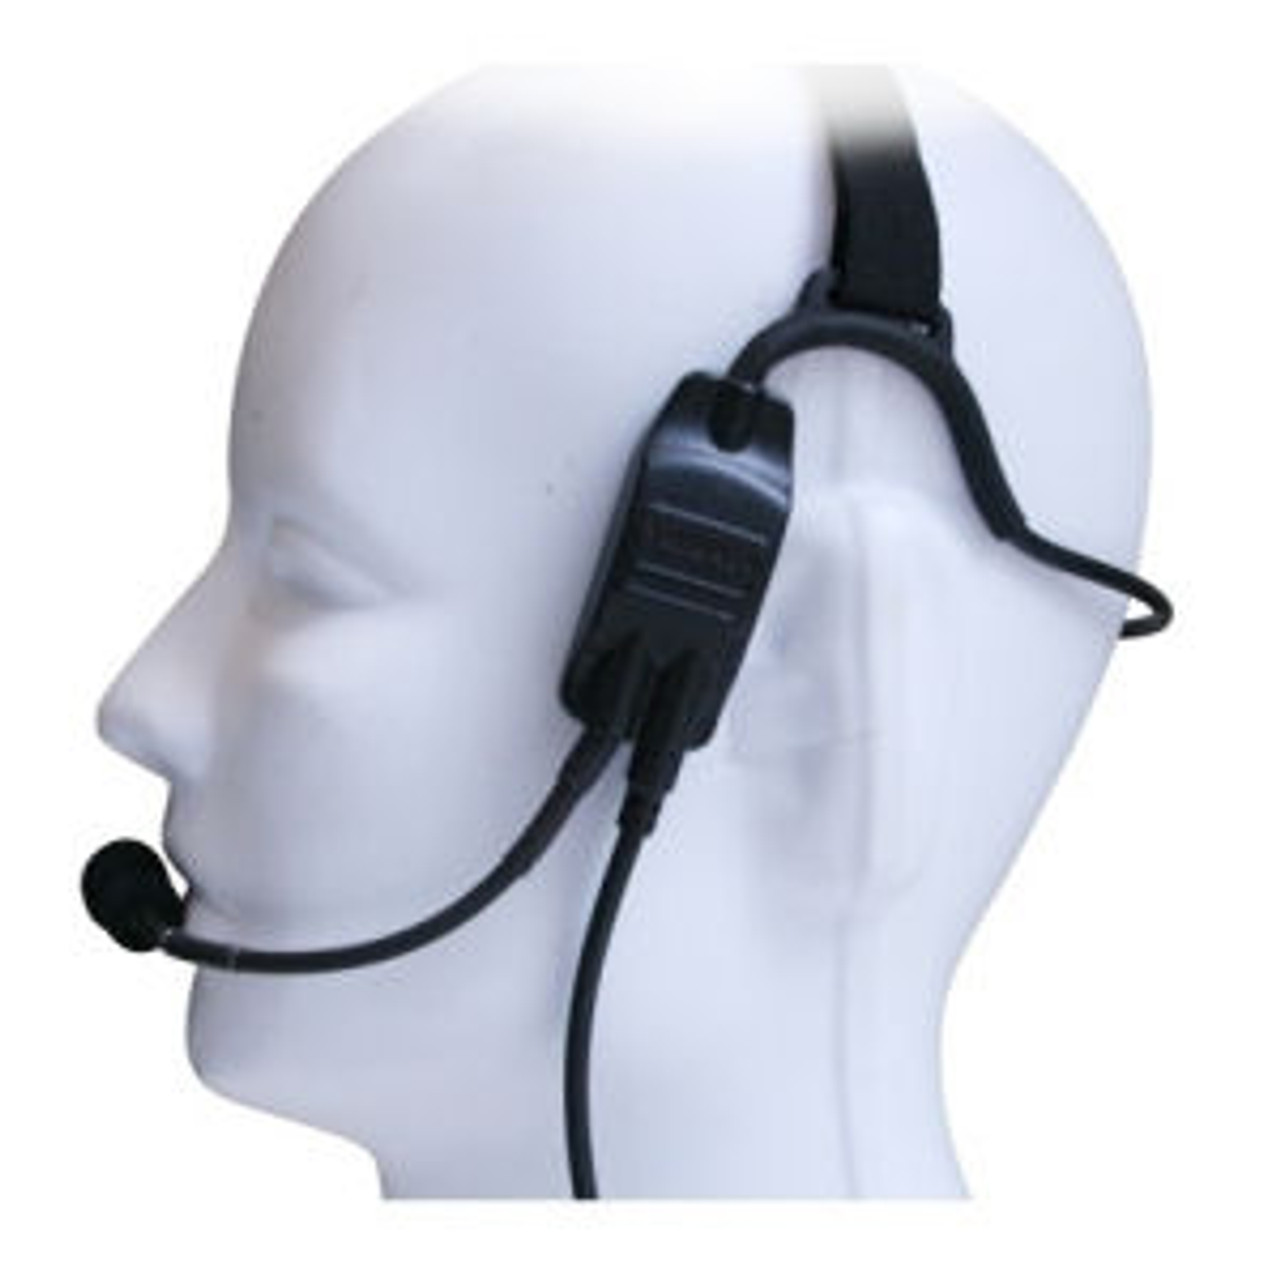 Kenwood VP5230 Temple Transducer Headset